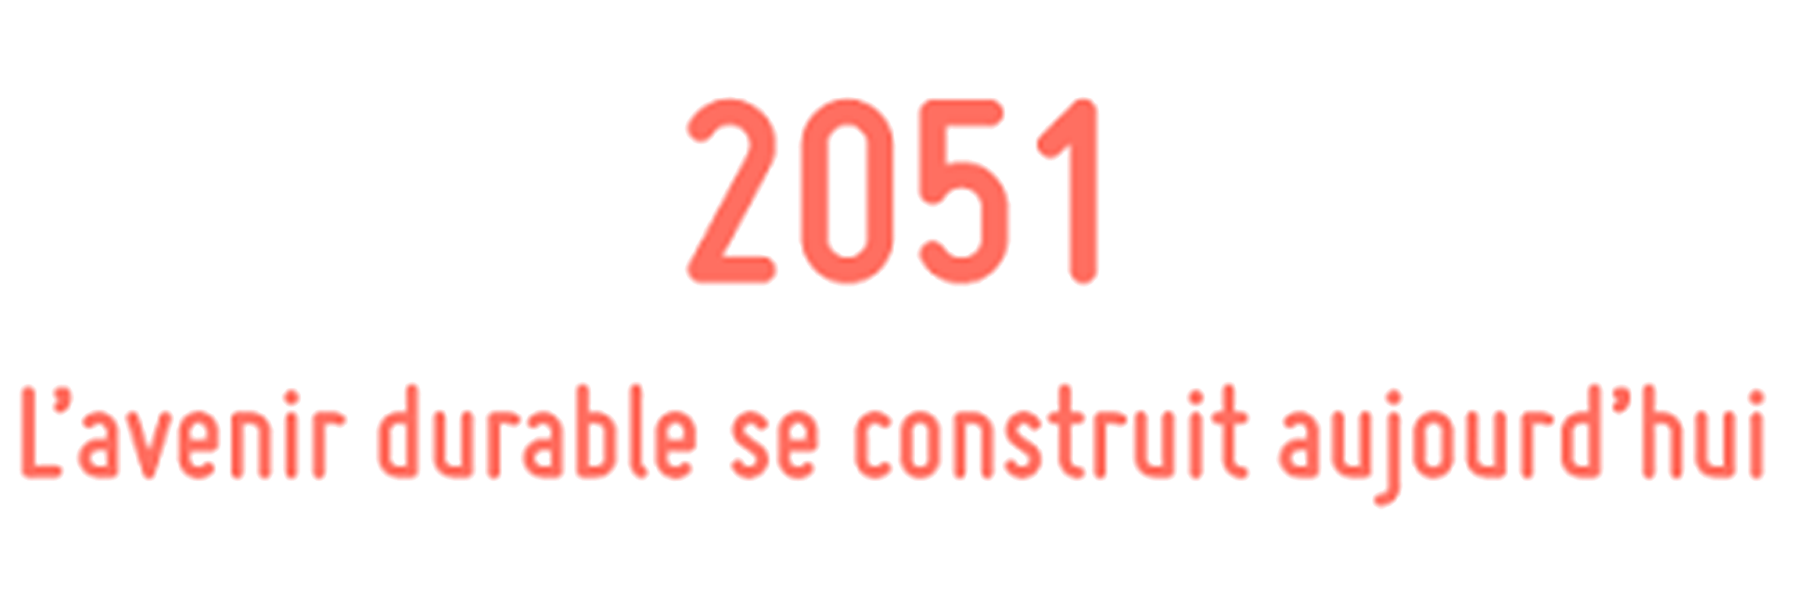 Agence 2051